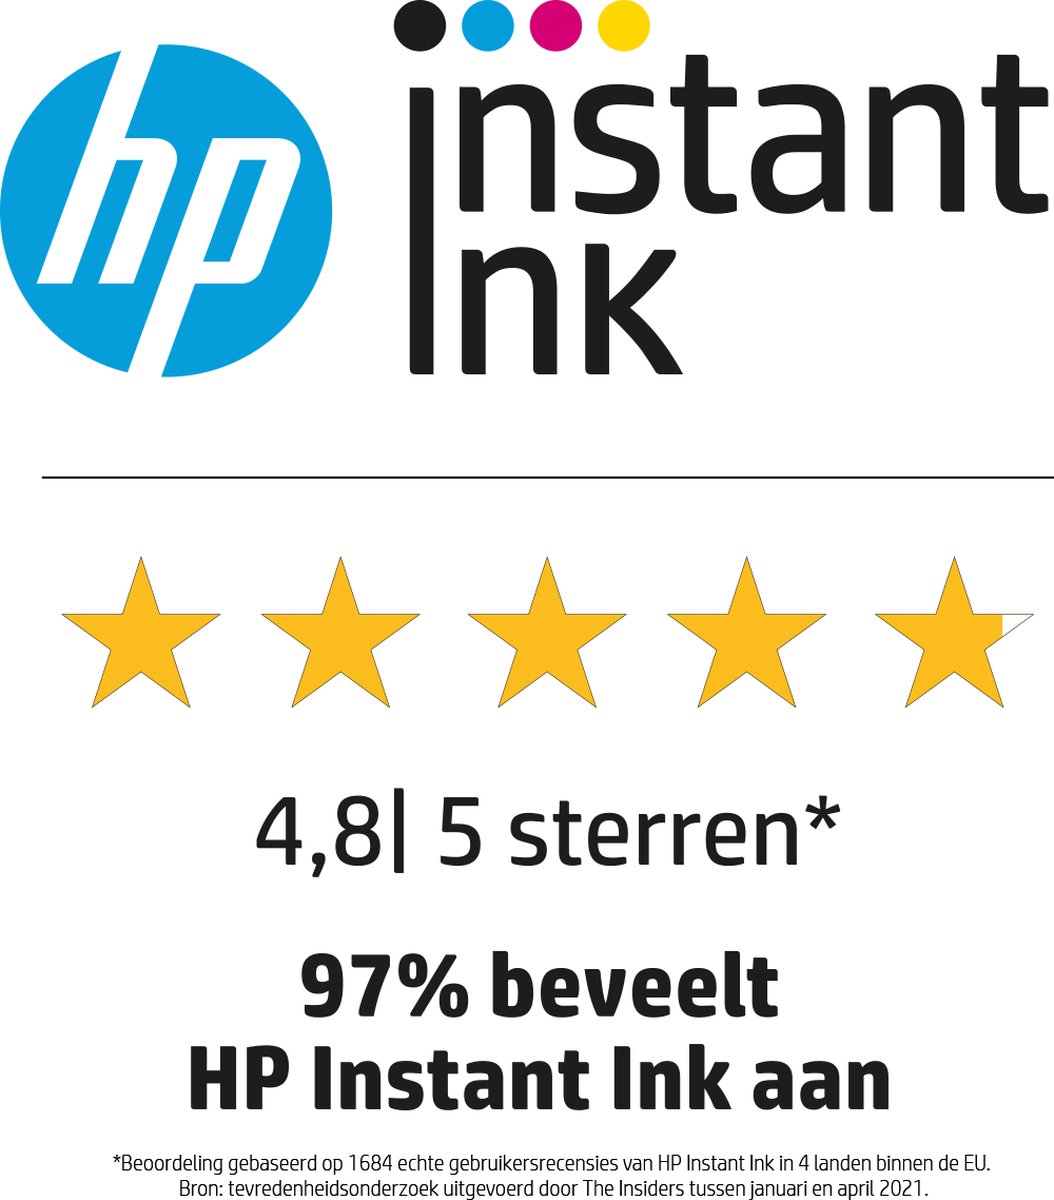 Vendez vos cartouches HP 305 Instant Ink Couleurs vides au meilleur prix !